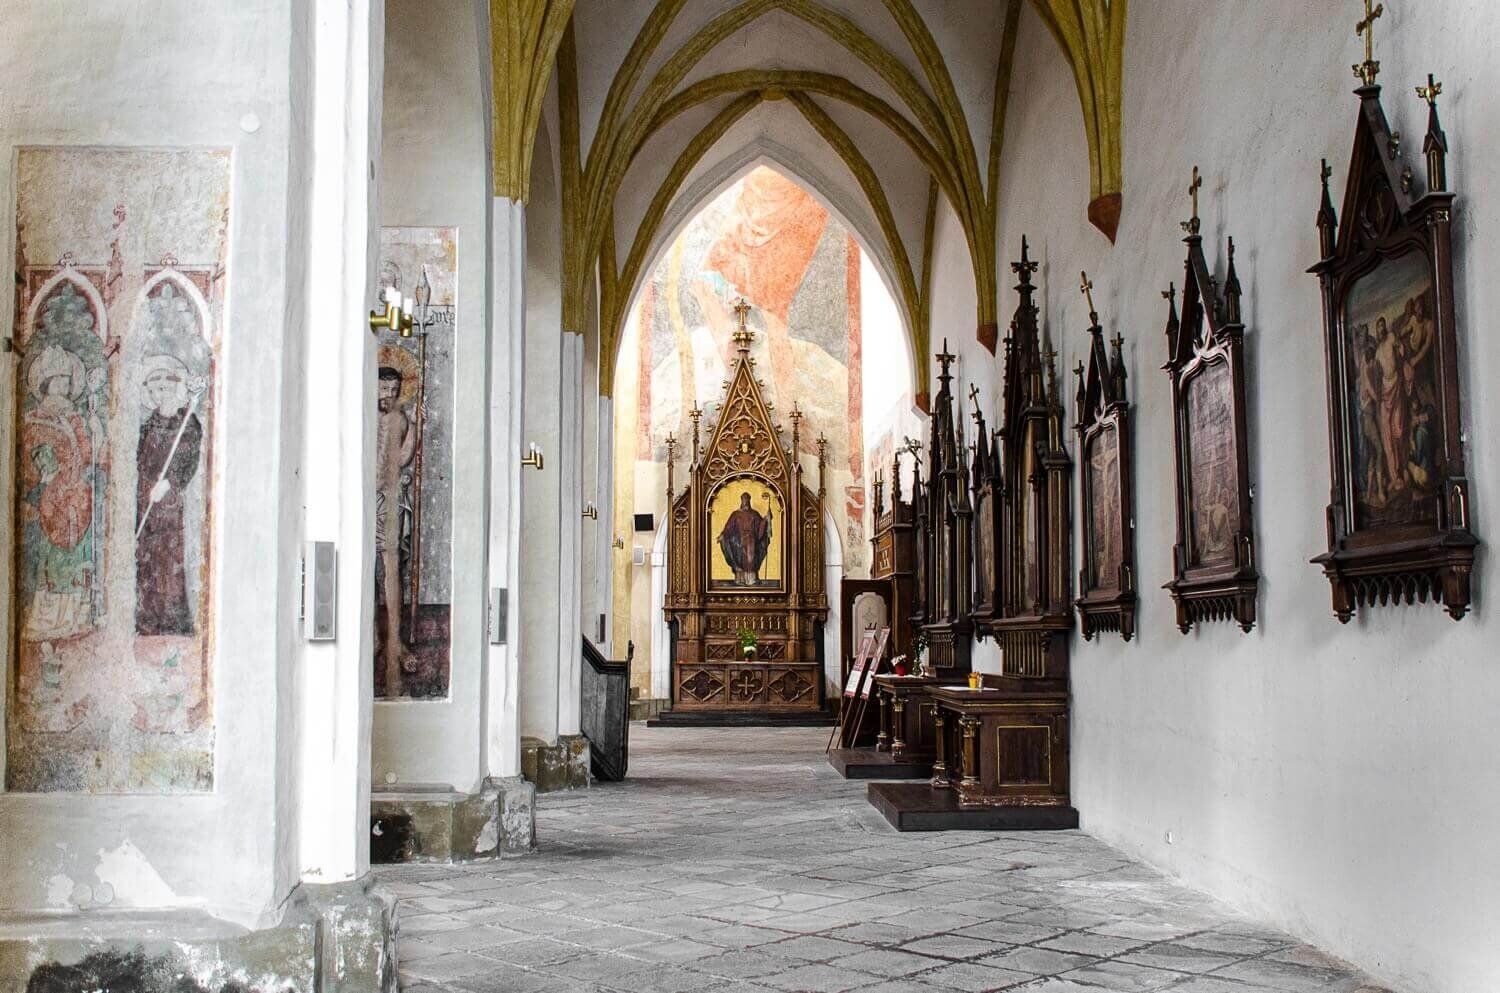 Interior de la iglesia Sacrificio de la Virgen María en Ceske Budejovice. Cosas que hacer en República Checa. Turismo rural en Bohemia checa.